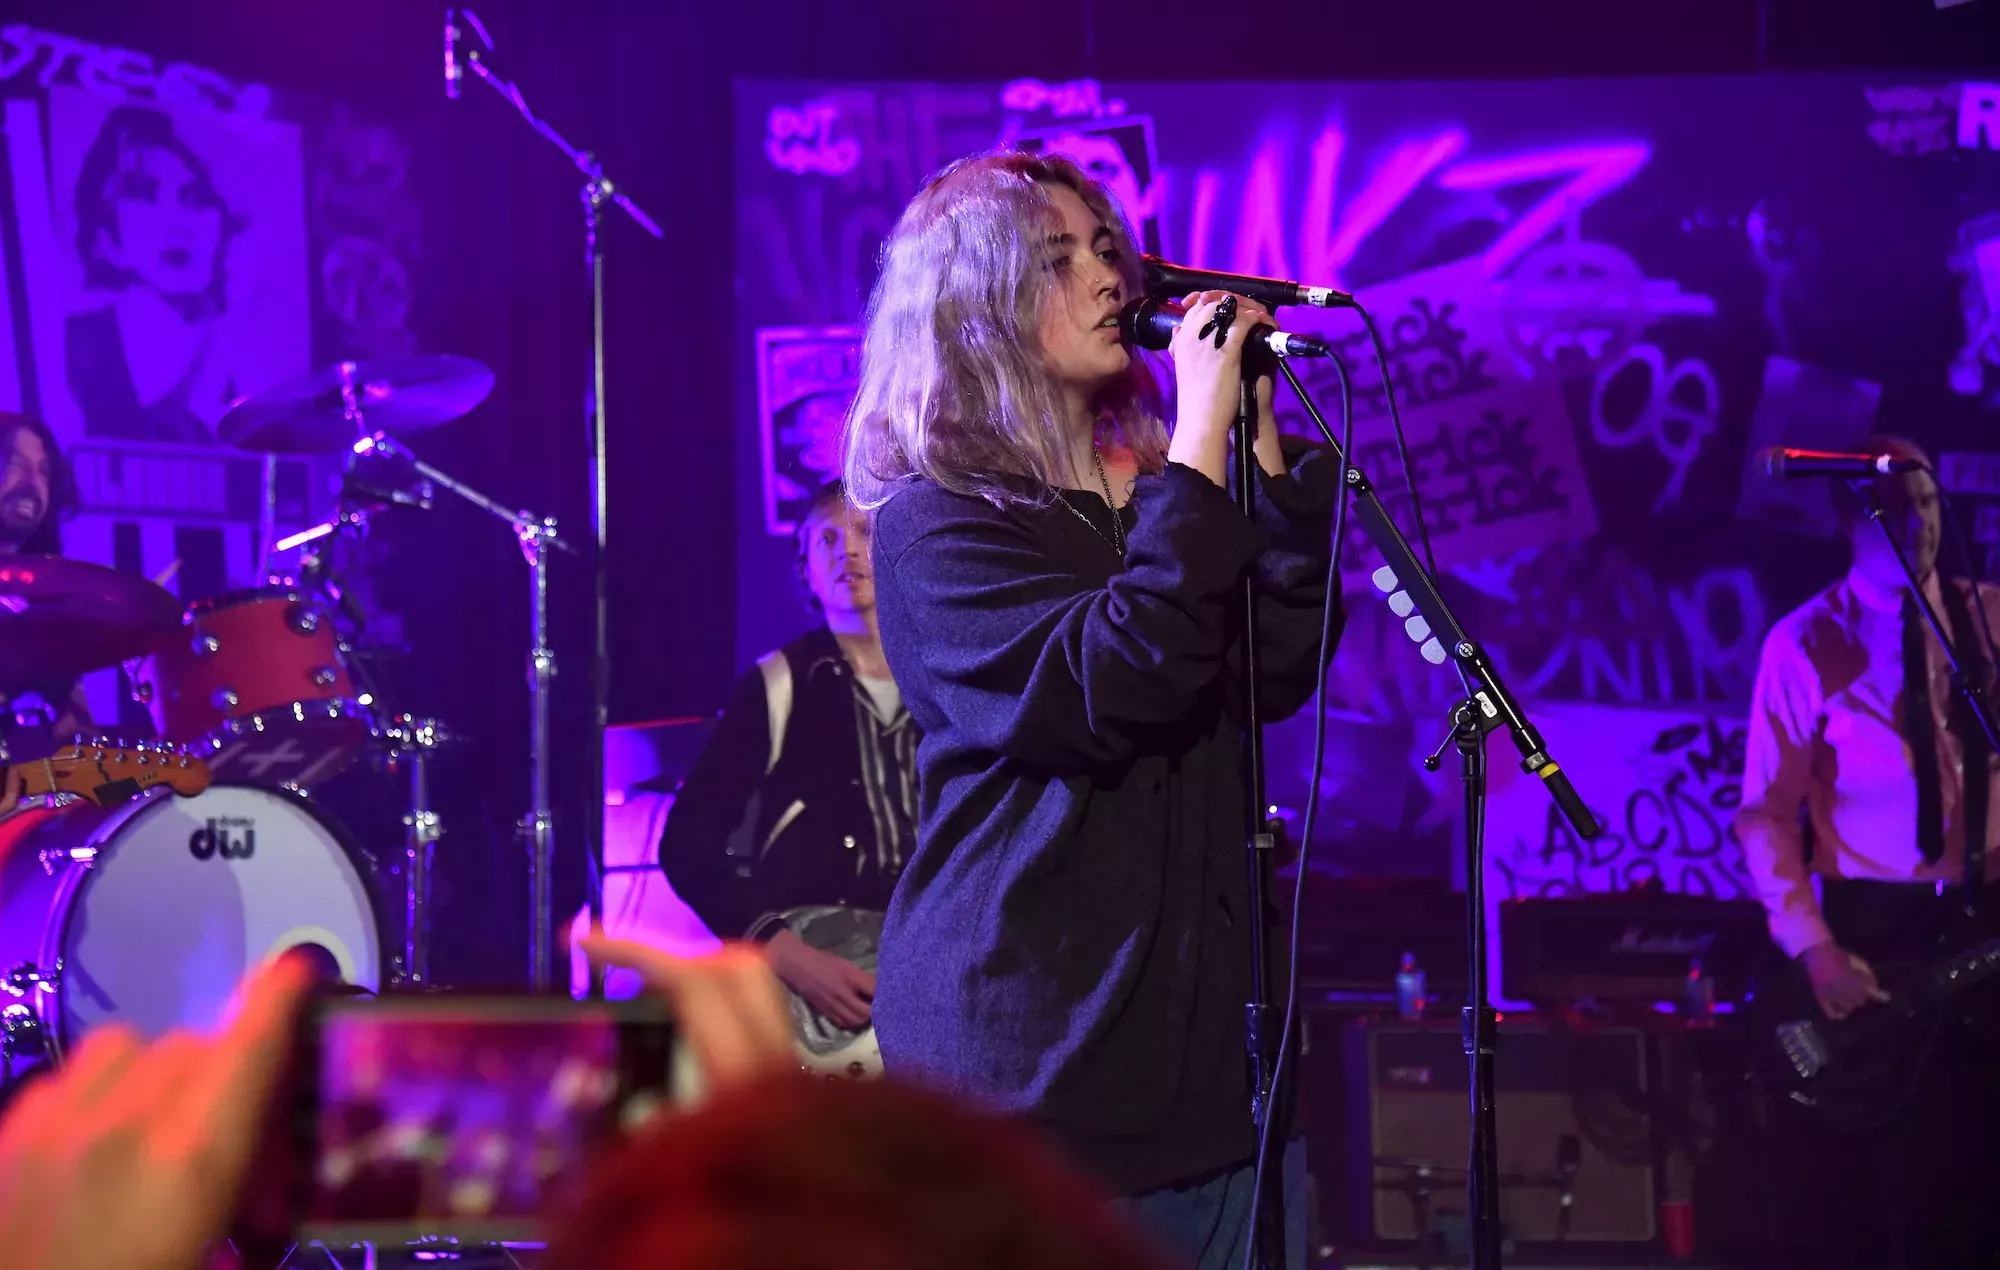 Mira cómo la hija de Dave Grohl, Violet, se une a Foo Fighters para un cover punk en Lollapalooza